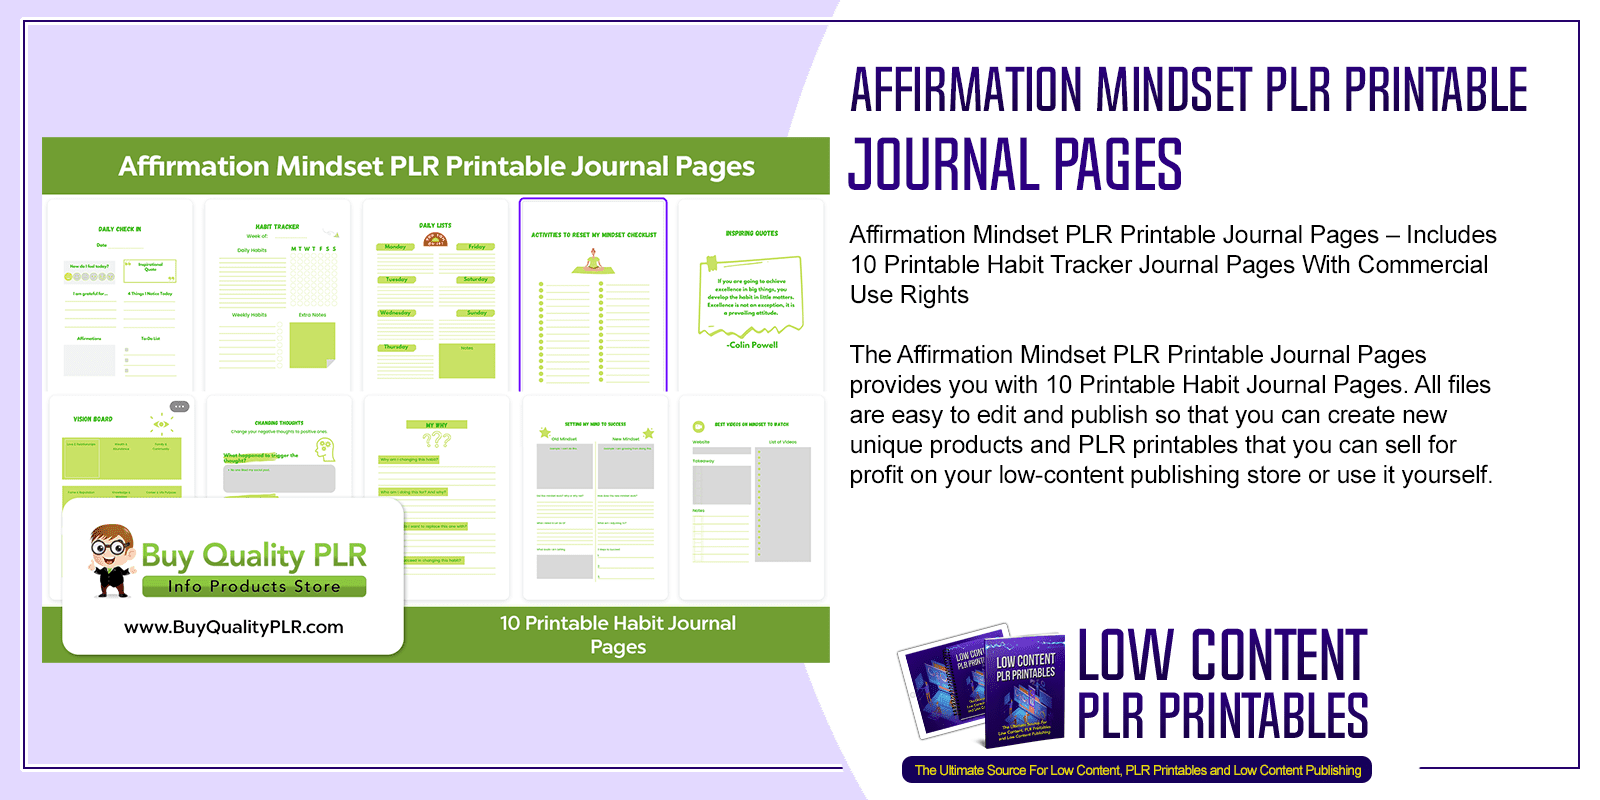 Affirmation Mindset PLR Printable Journal Pages